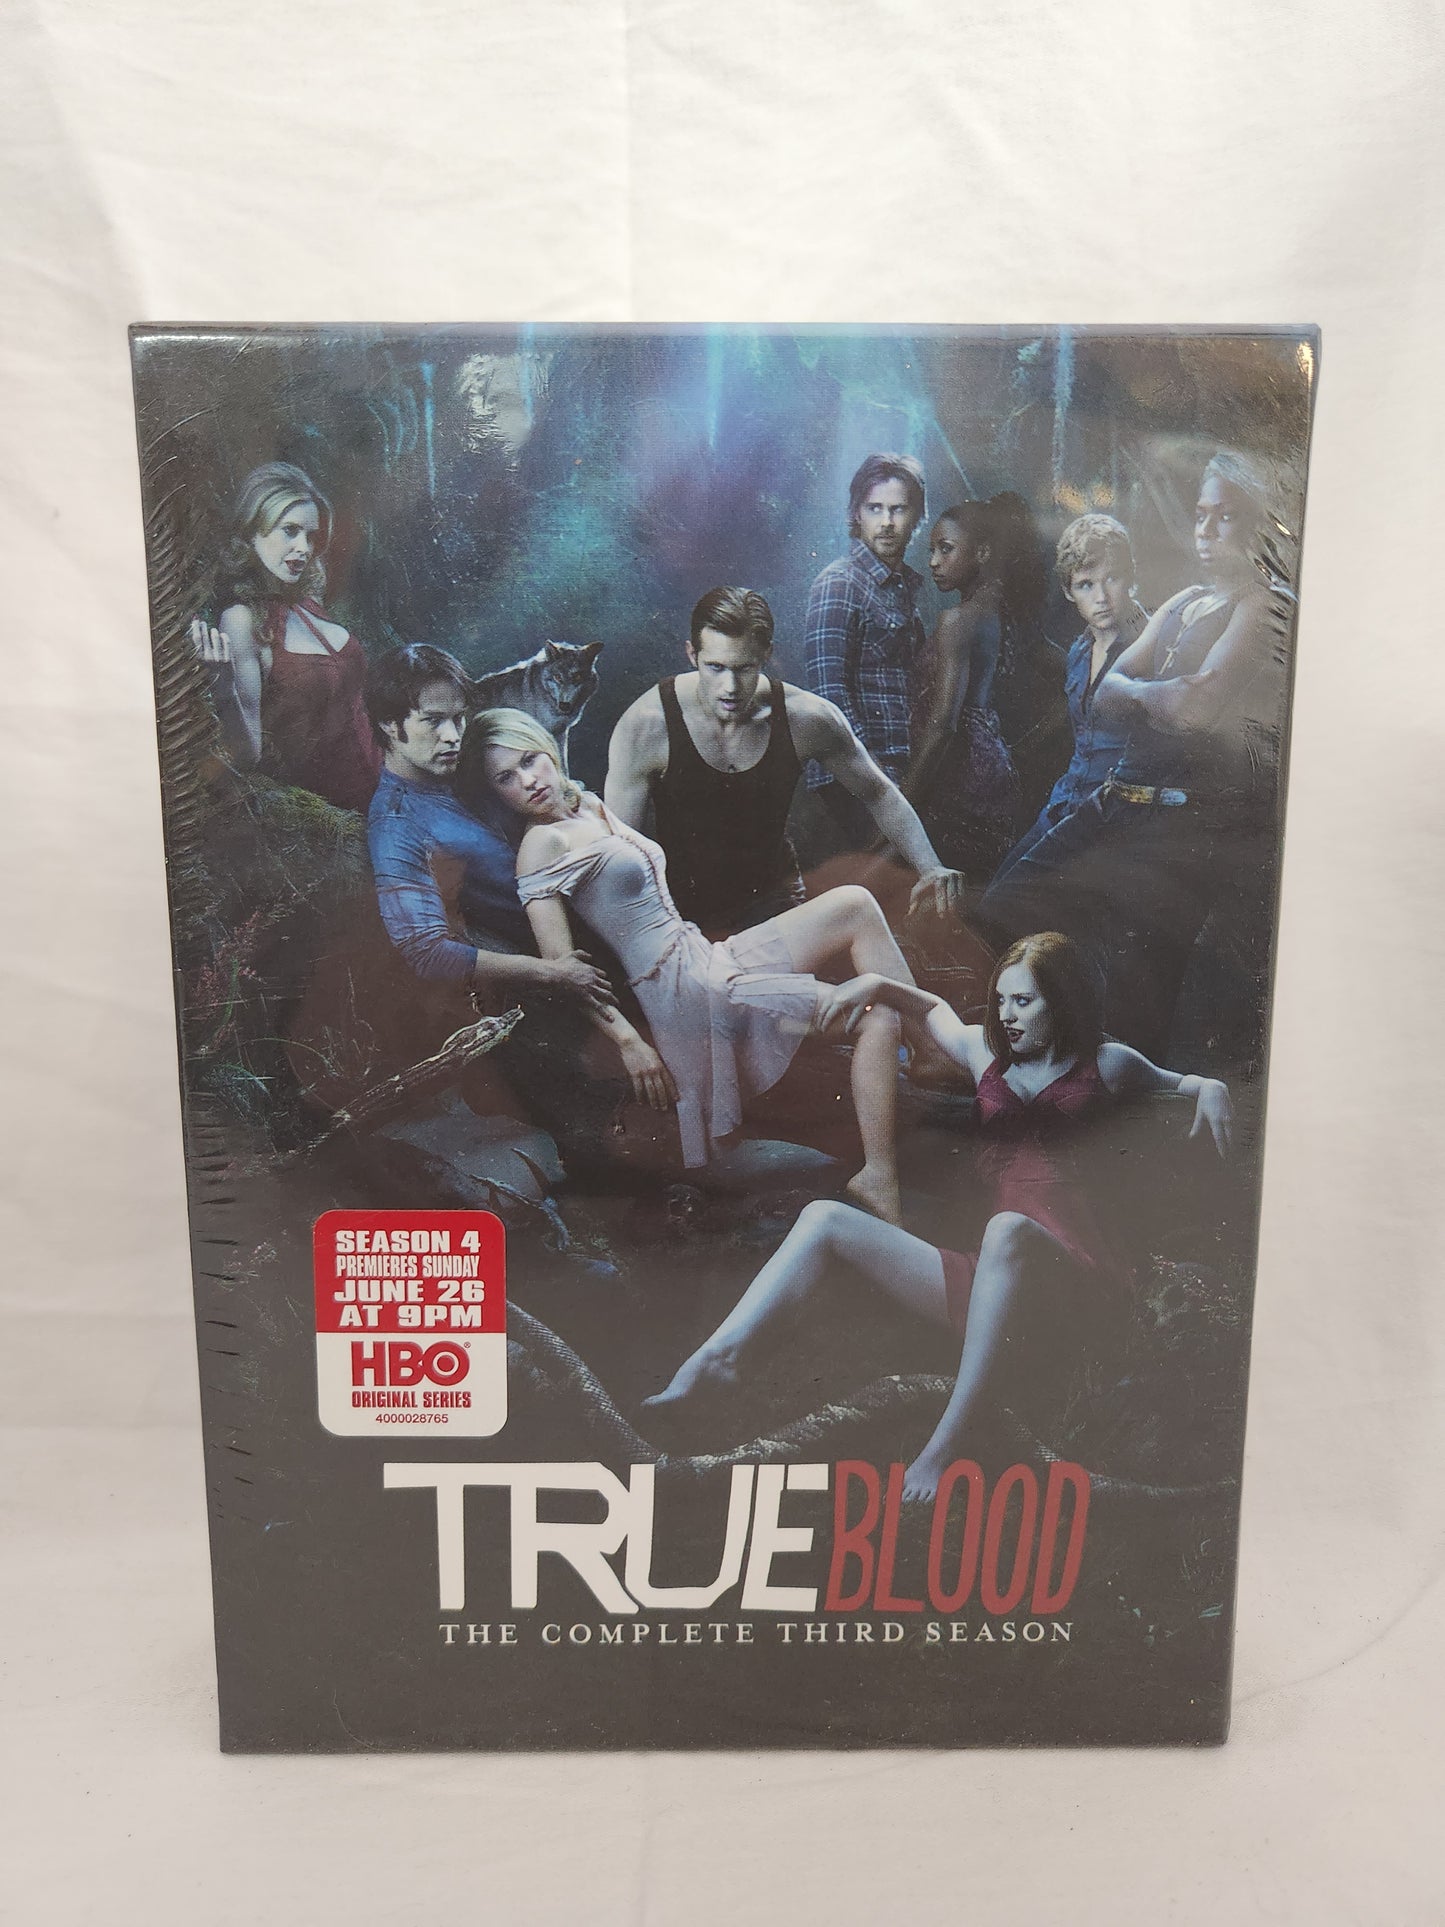 HBO's - True Blood - Seasons 1-4 DVDs